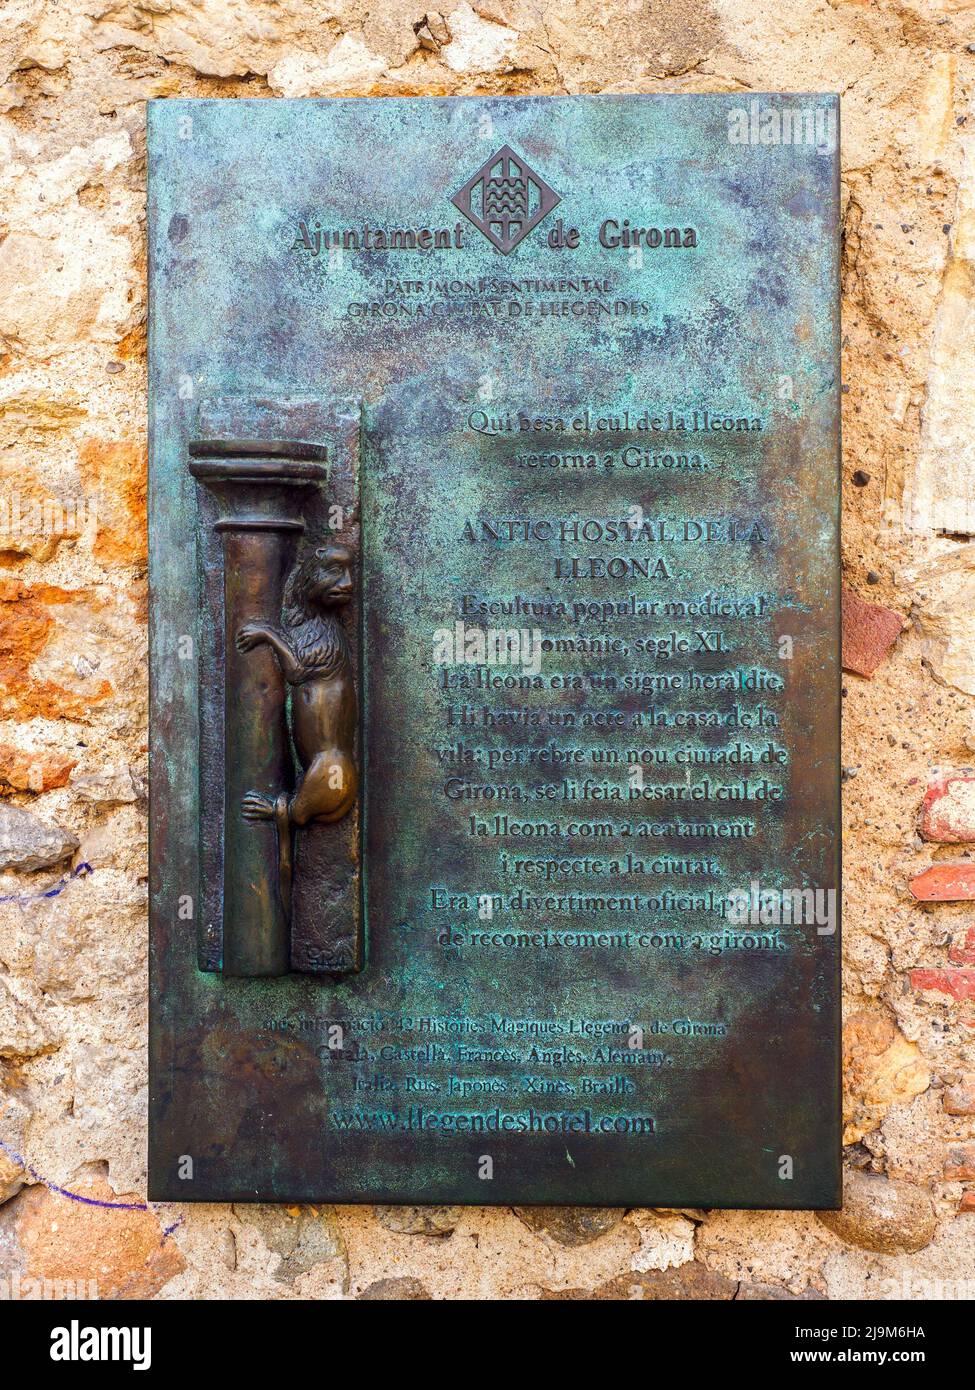 Eine Tafel an einer Wand, die die Tradition des Küssens der Steinstatue „La Lleona“ erklärt - Girona, Spanien Stockfoto